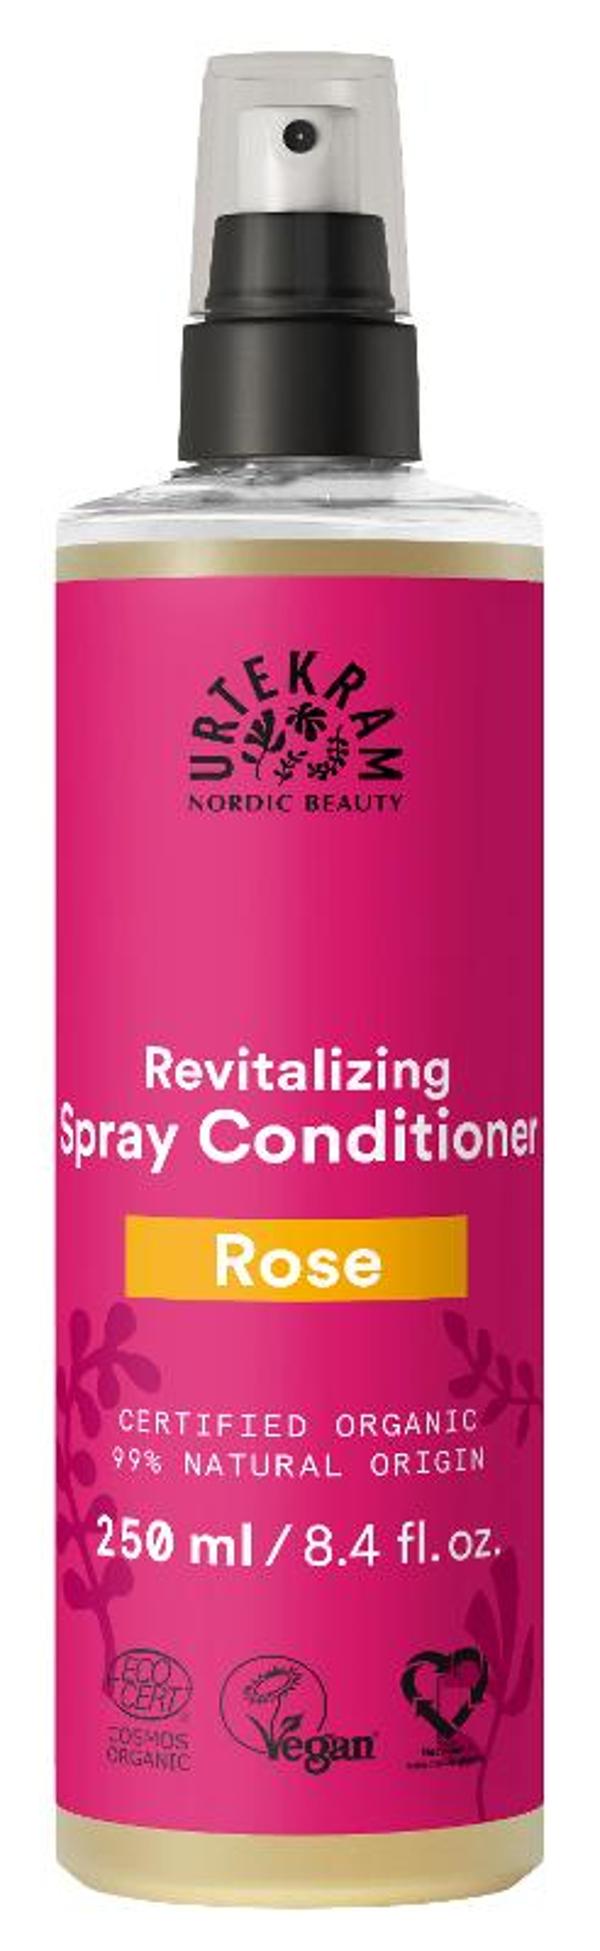 Produktfoto zu Revitalizing Rose Spray Conditioner